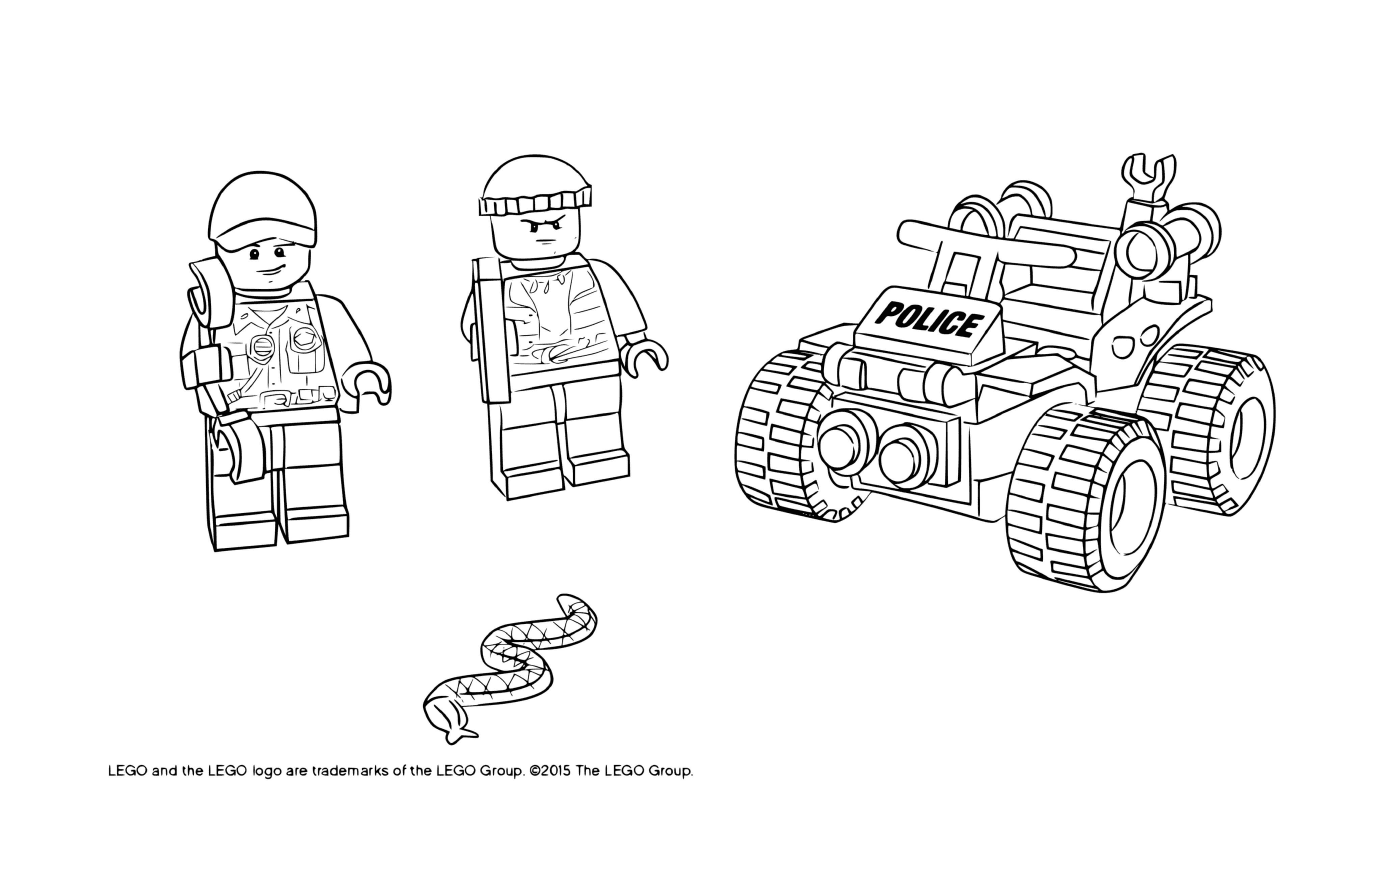  Police Lego City ATV Patrol 